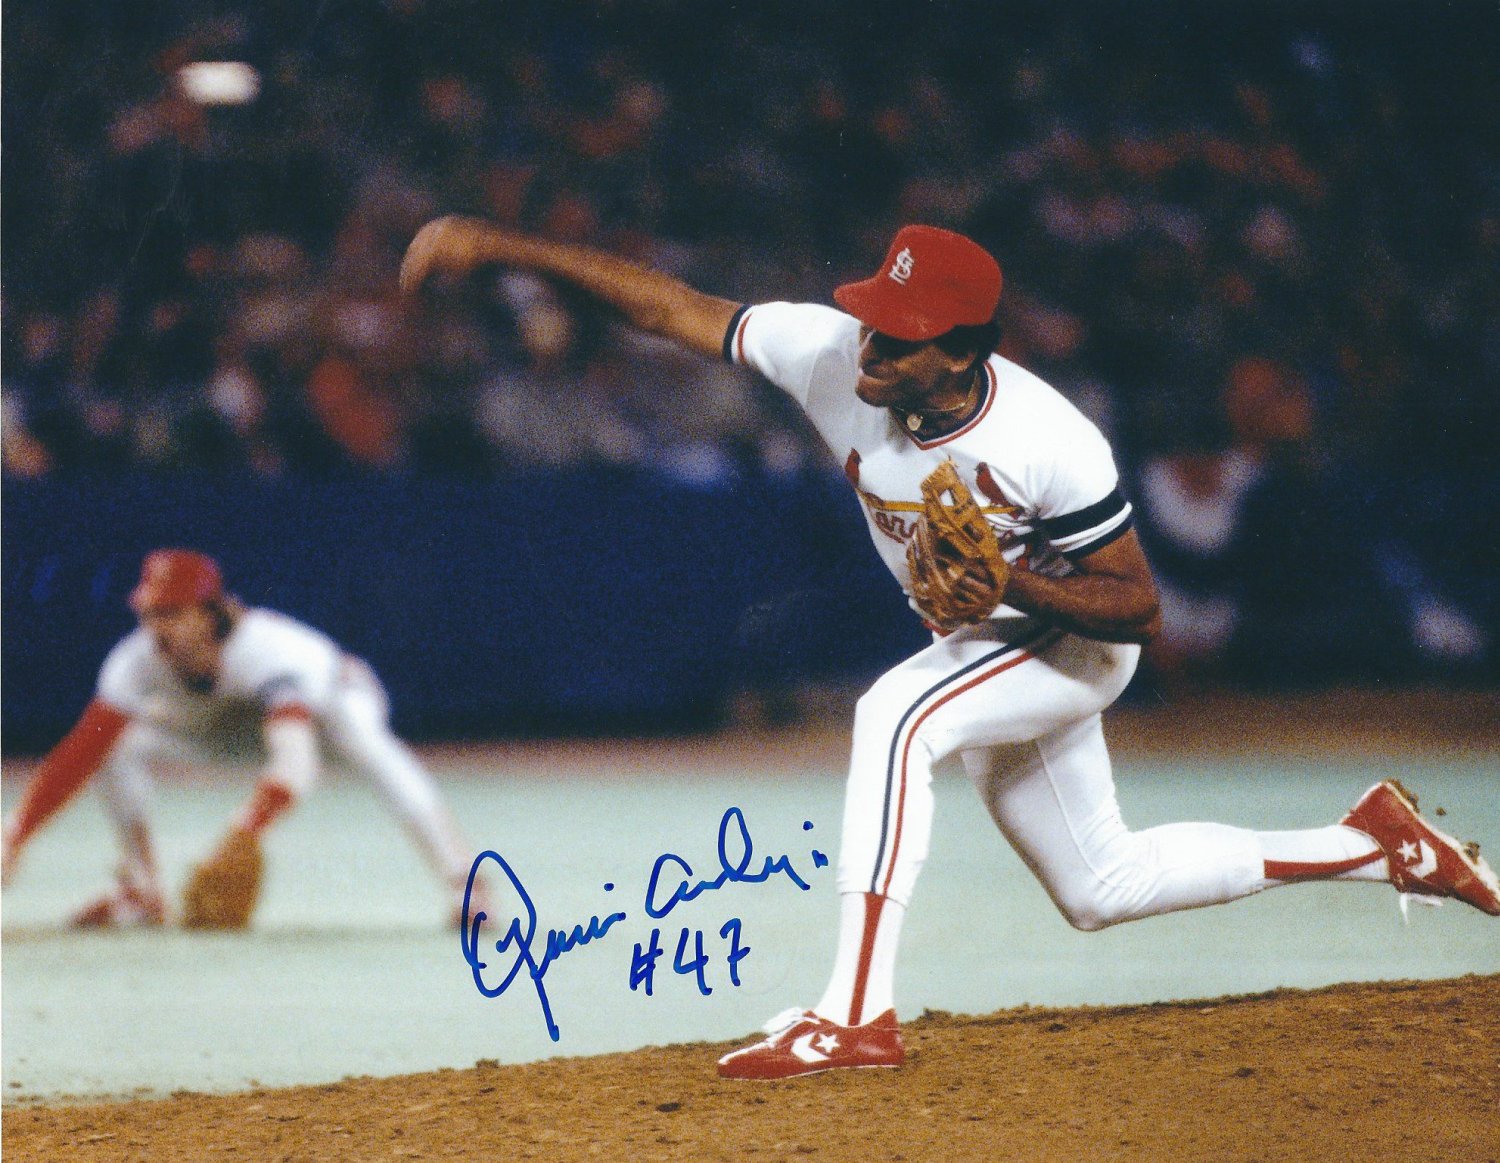 Autographed Joaquin Andujar St. Louis Cardinals 8x10 Photo.  Jugadores de  béisbol, Tarjetas de béisbol, Liga de beisbol